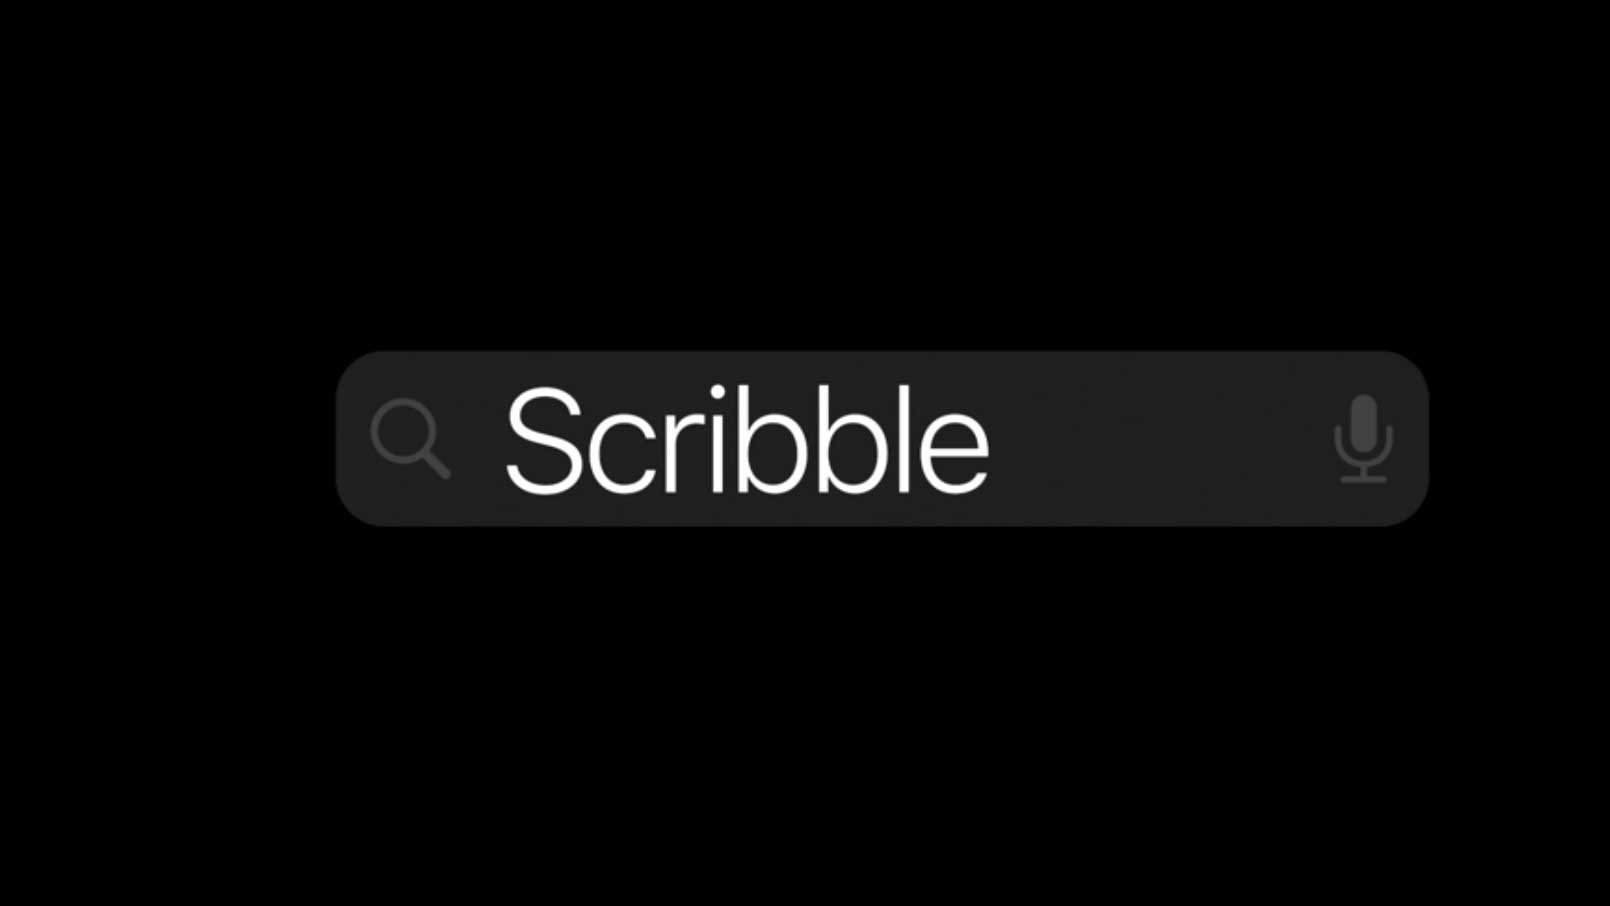 ویژگی Scribble در iPadOS 14 اجازه نوشتن در تمام کادرهای نوشته را به شما می دهد